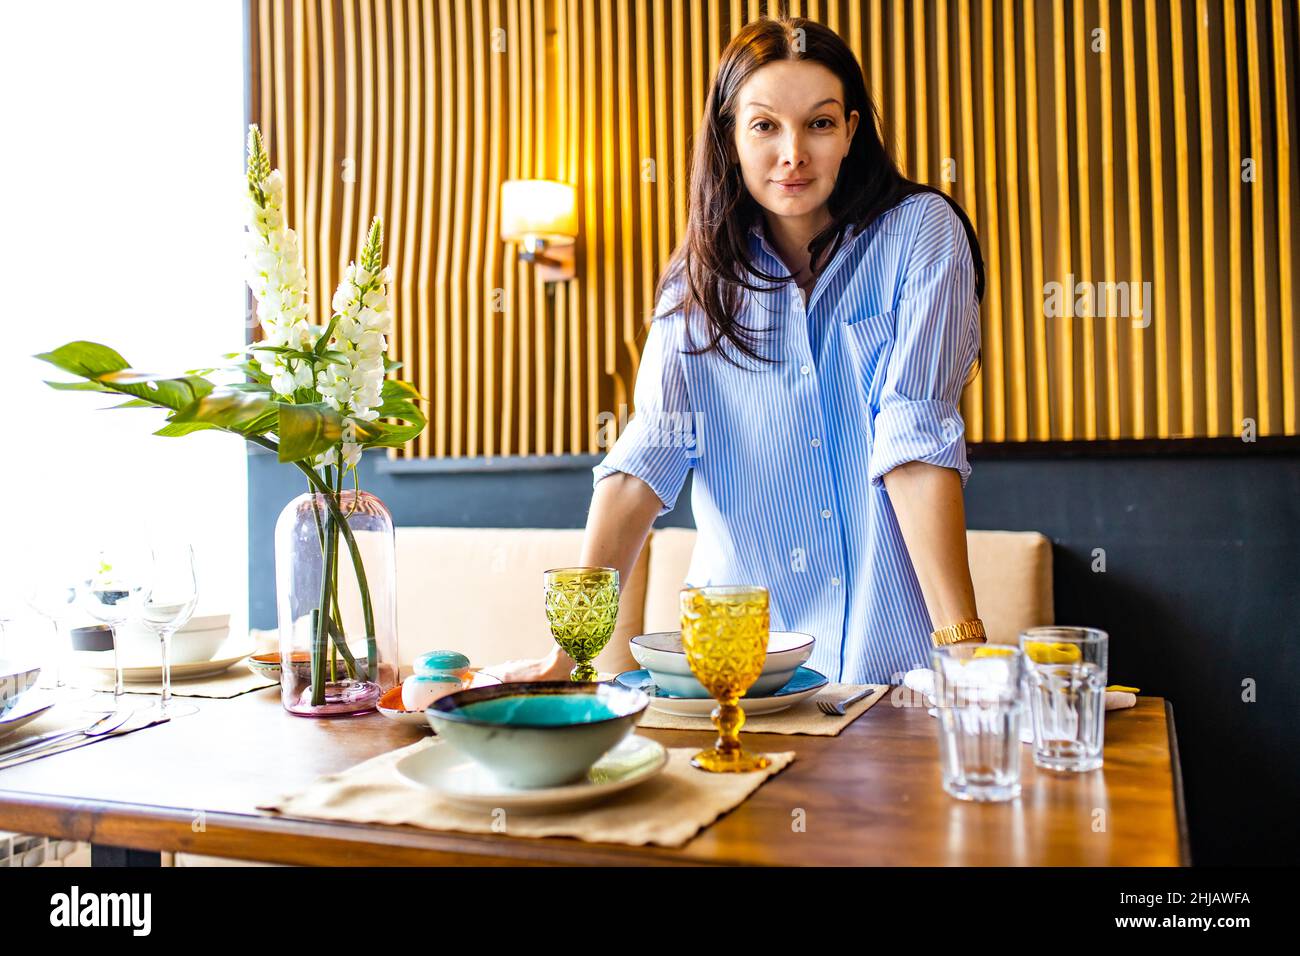 Porträt einer jungen, schönen kaukasischen Frau, die ein Geschirr wascht und den Tisch bei Tageslicht einlegt Stockfoto